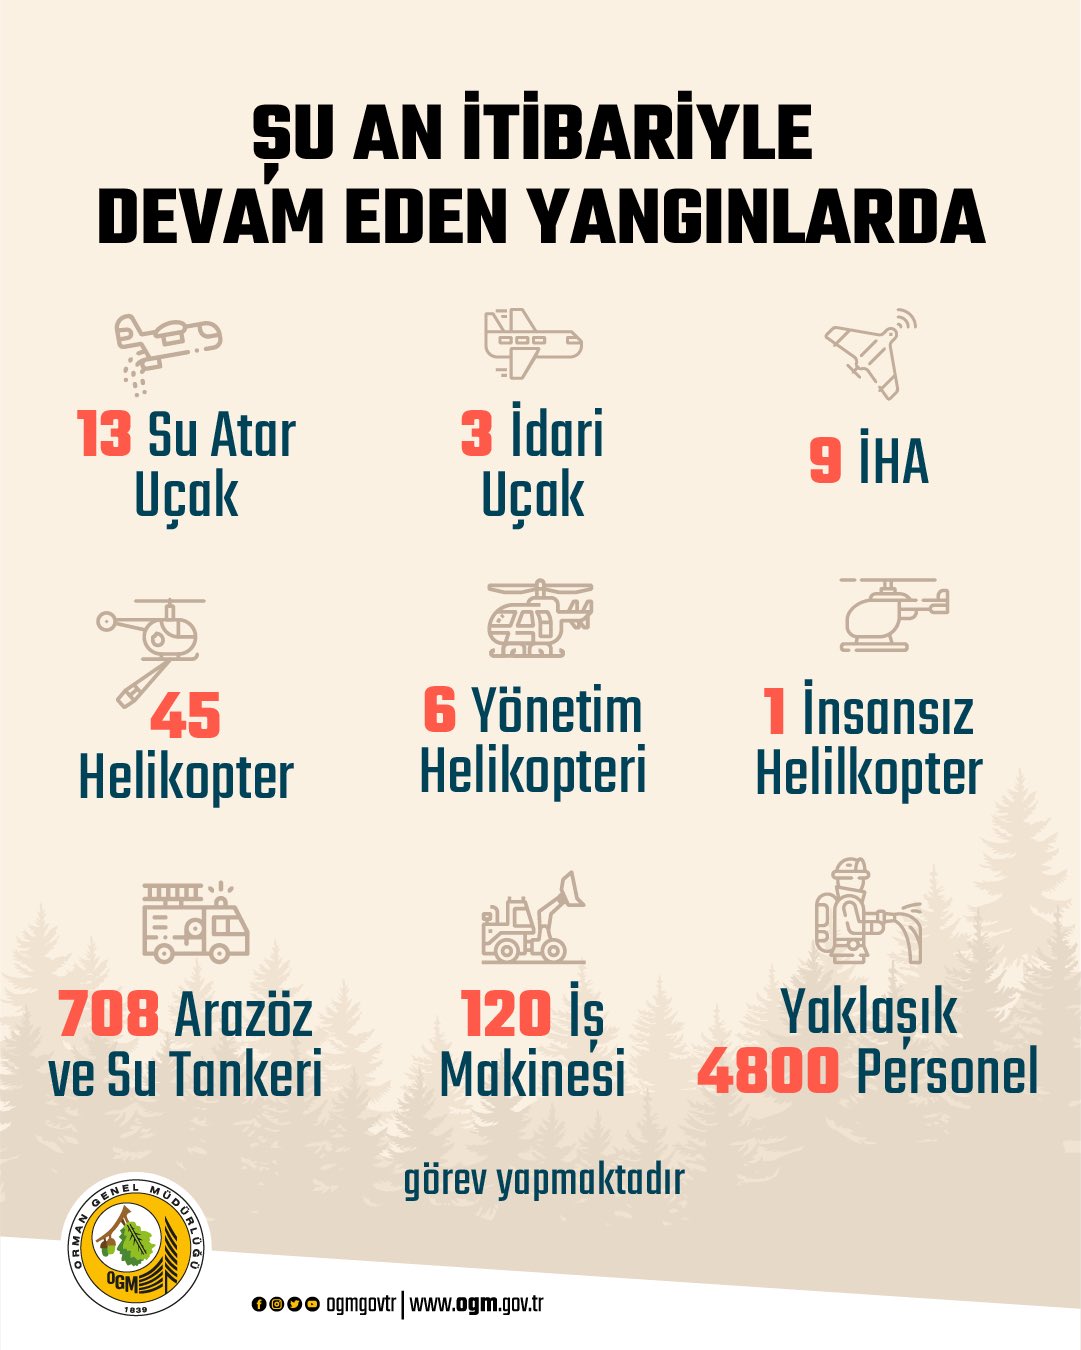 Türkiye, 6 gündür yangınlarla çaba ediyor: 3 vilayetteki 7 yangın sürüyor, 32 vilayetteki 119 yangın denetim altında